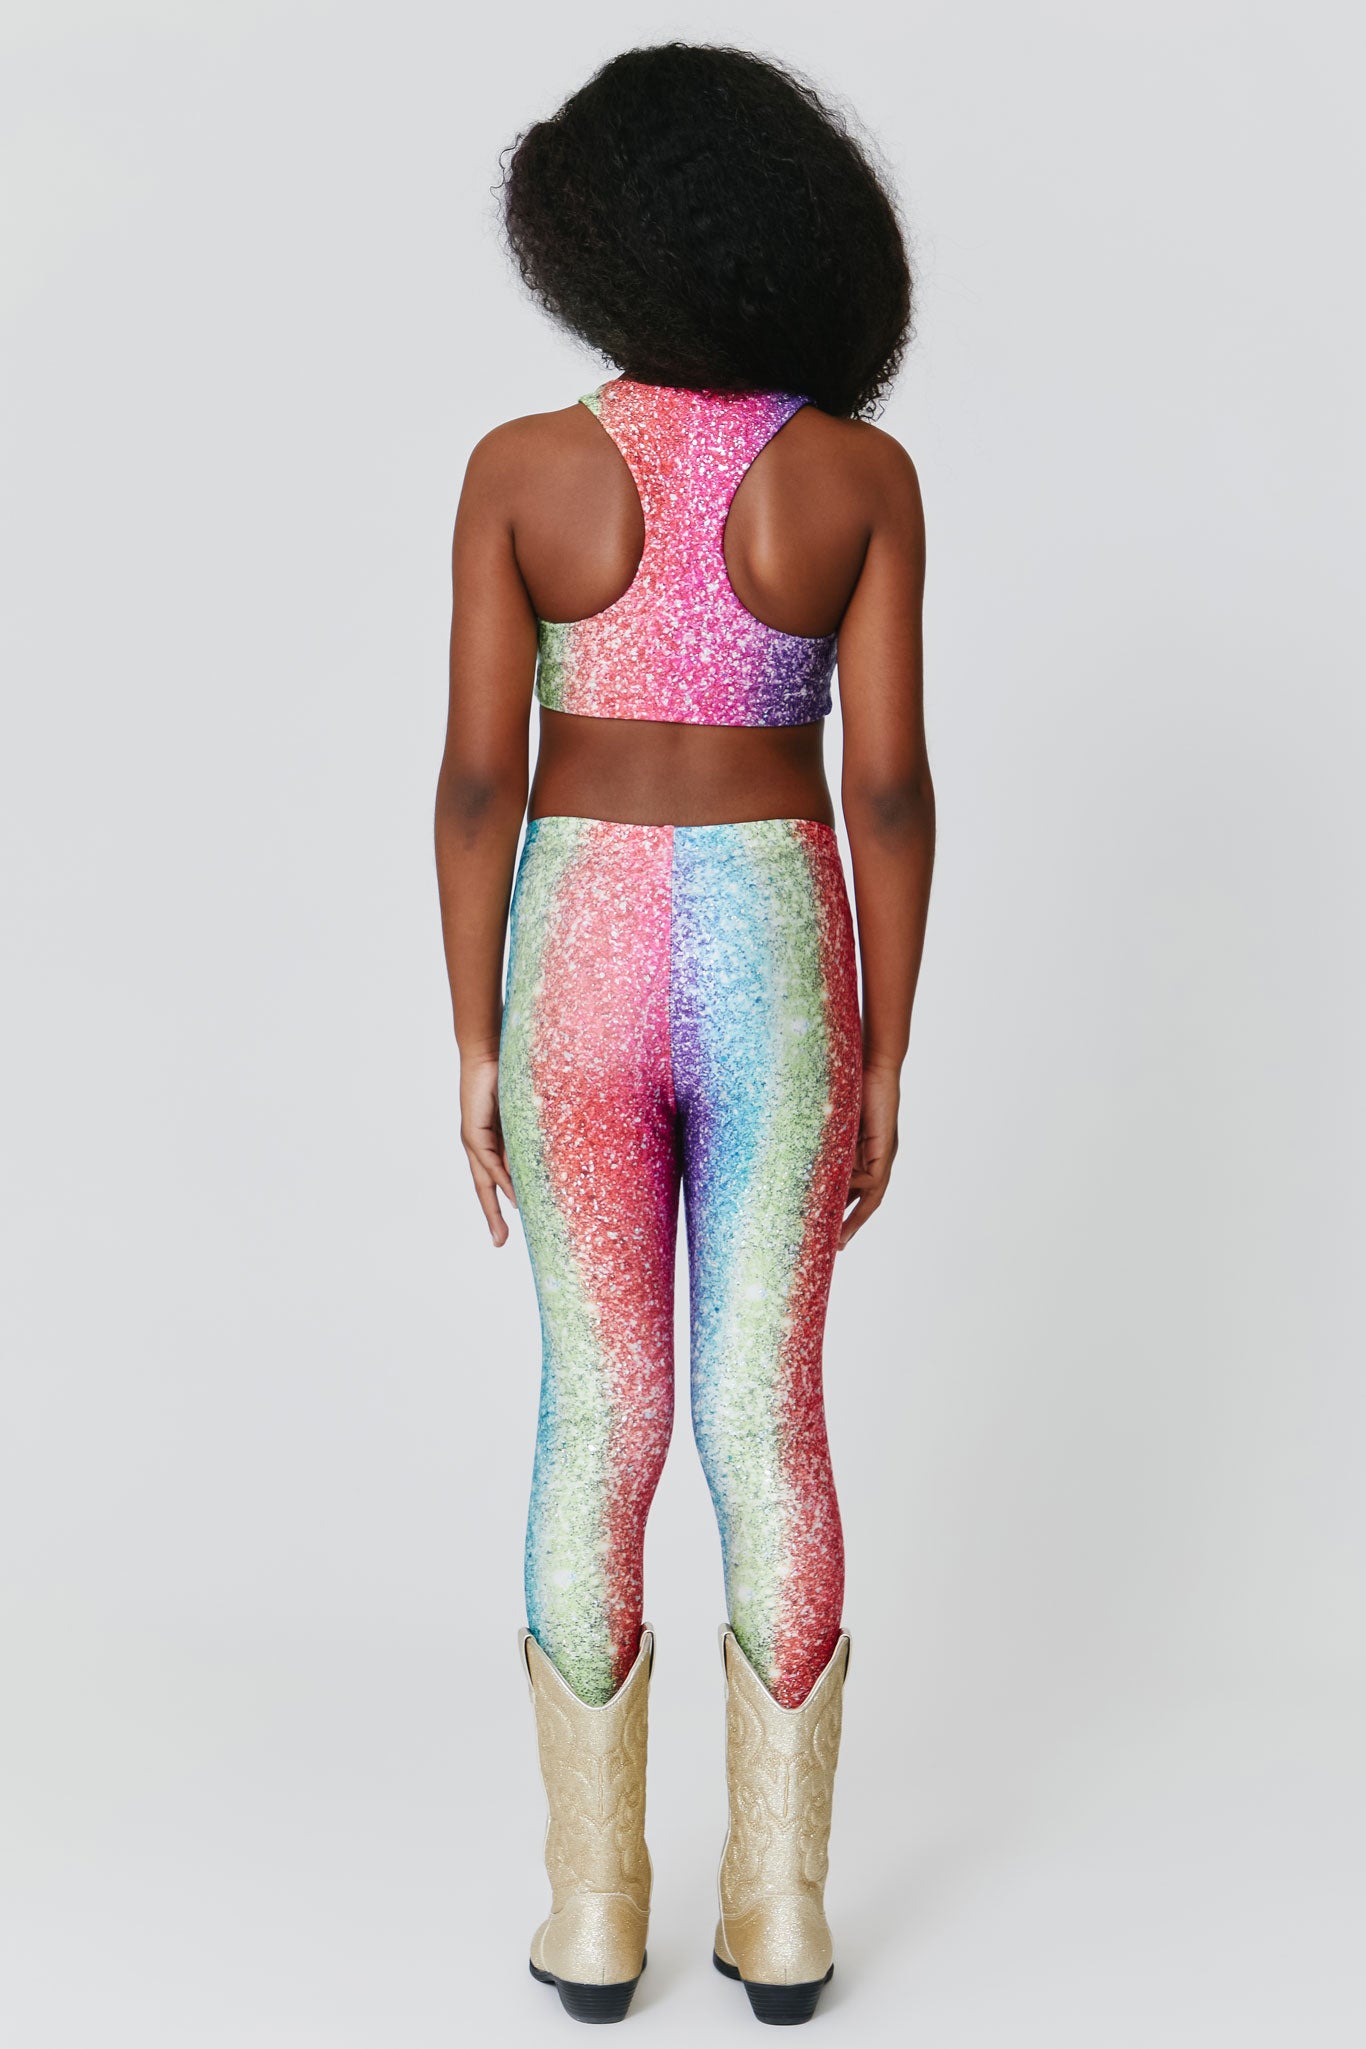 Girls Leggings in Rainbow Glitter Foil –